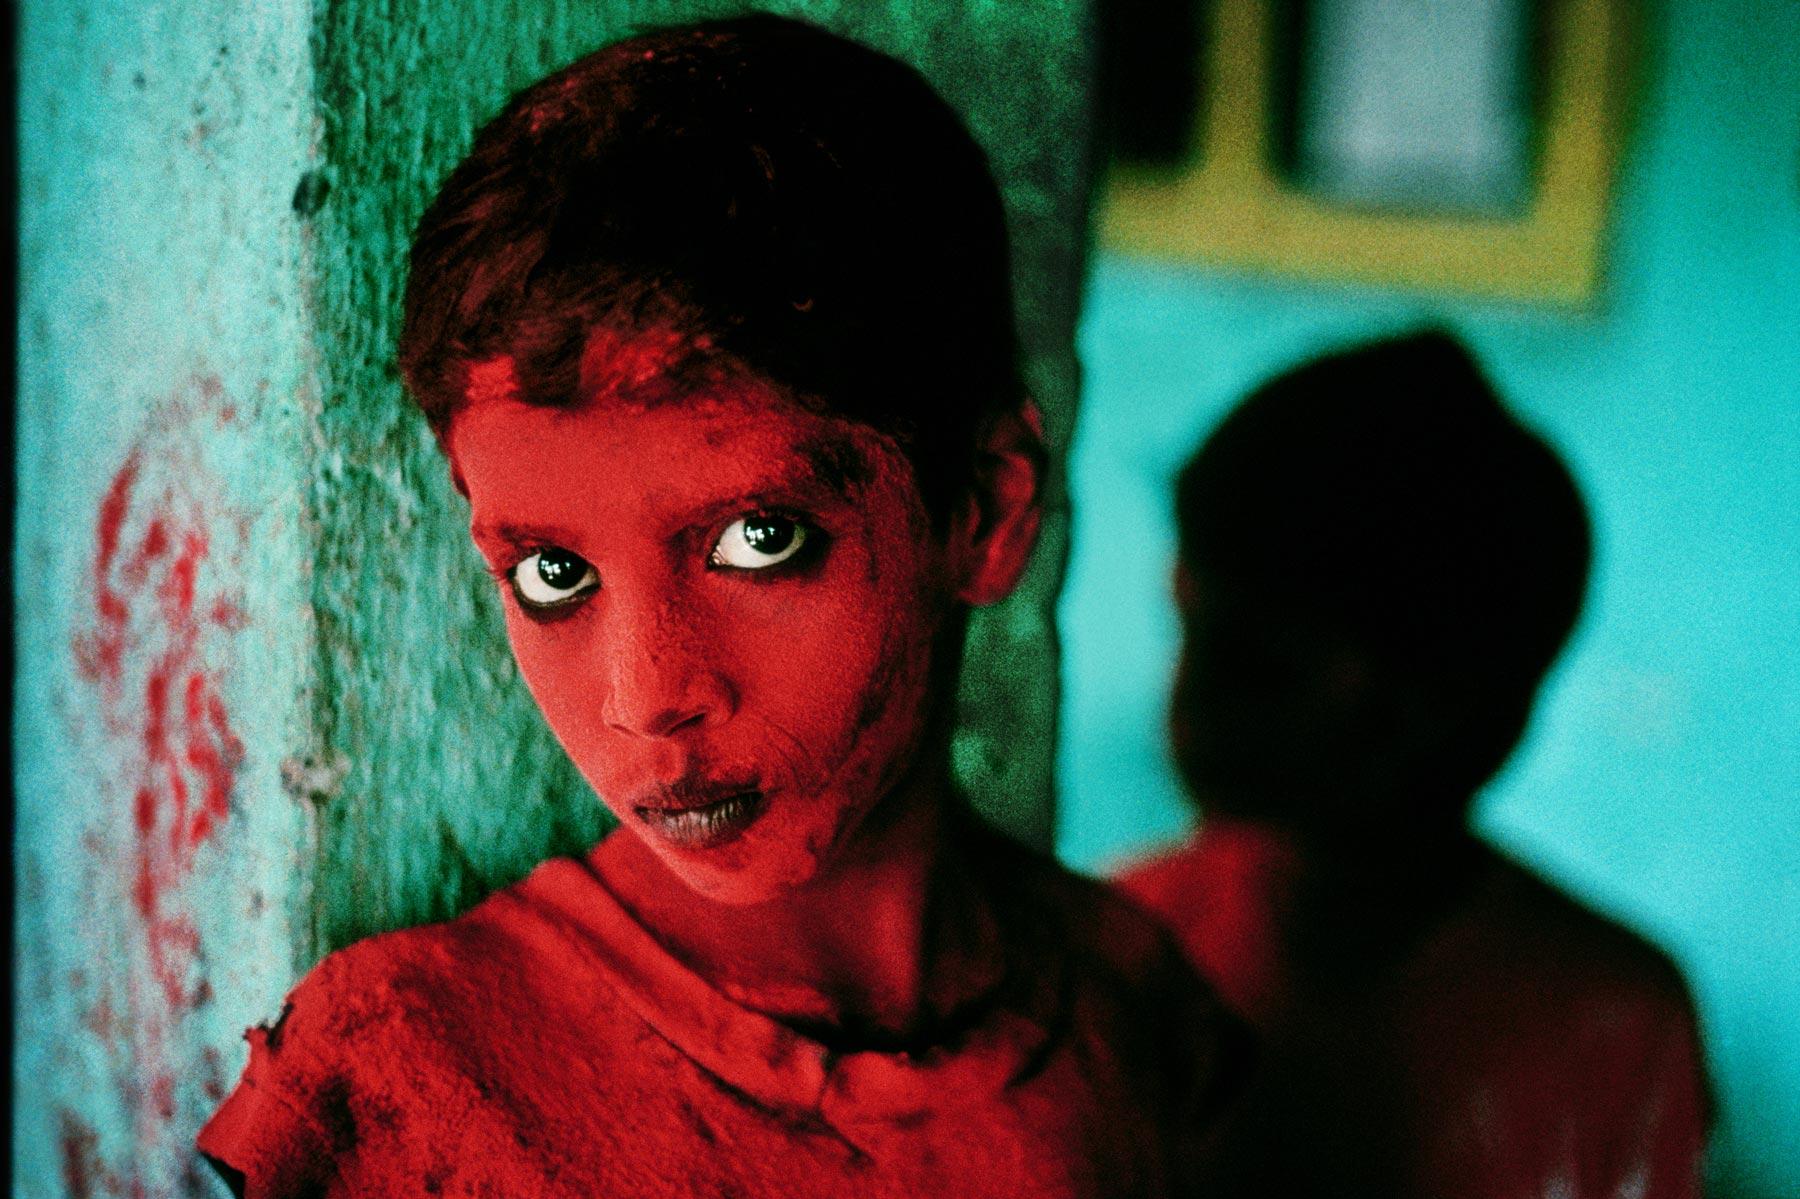  肖像摄影。<br/>Steve McCurry摄于印度，孟买。 